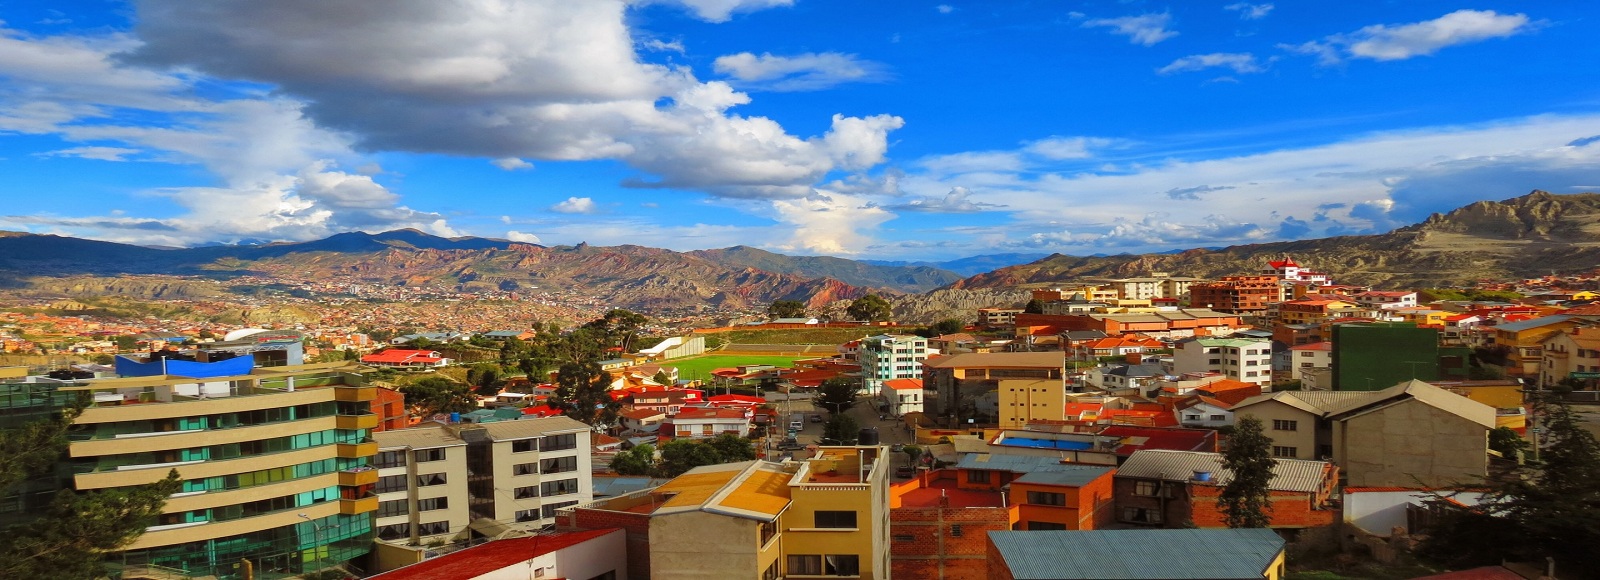 Ofertas de Traslados en La Paz. Traslados económicos en La Paz 